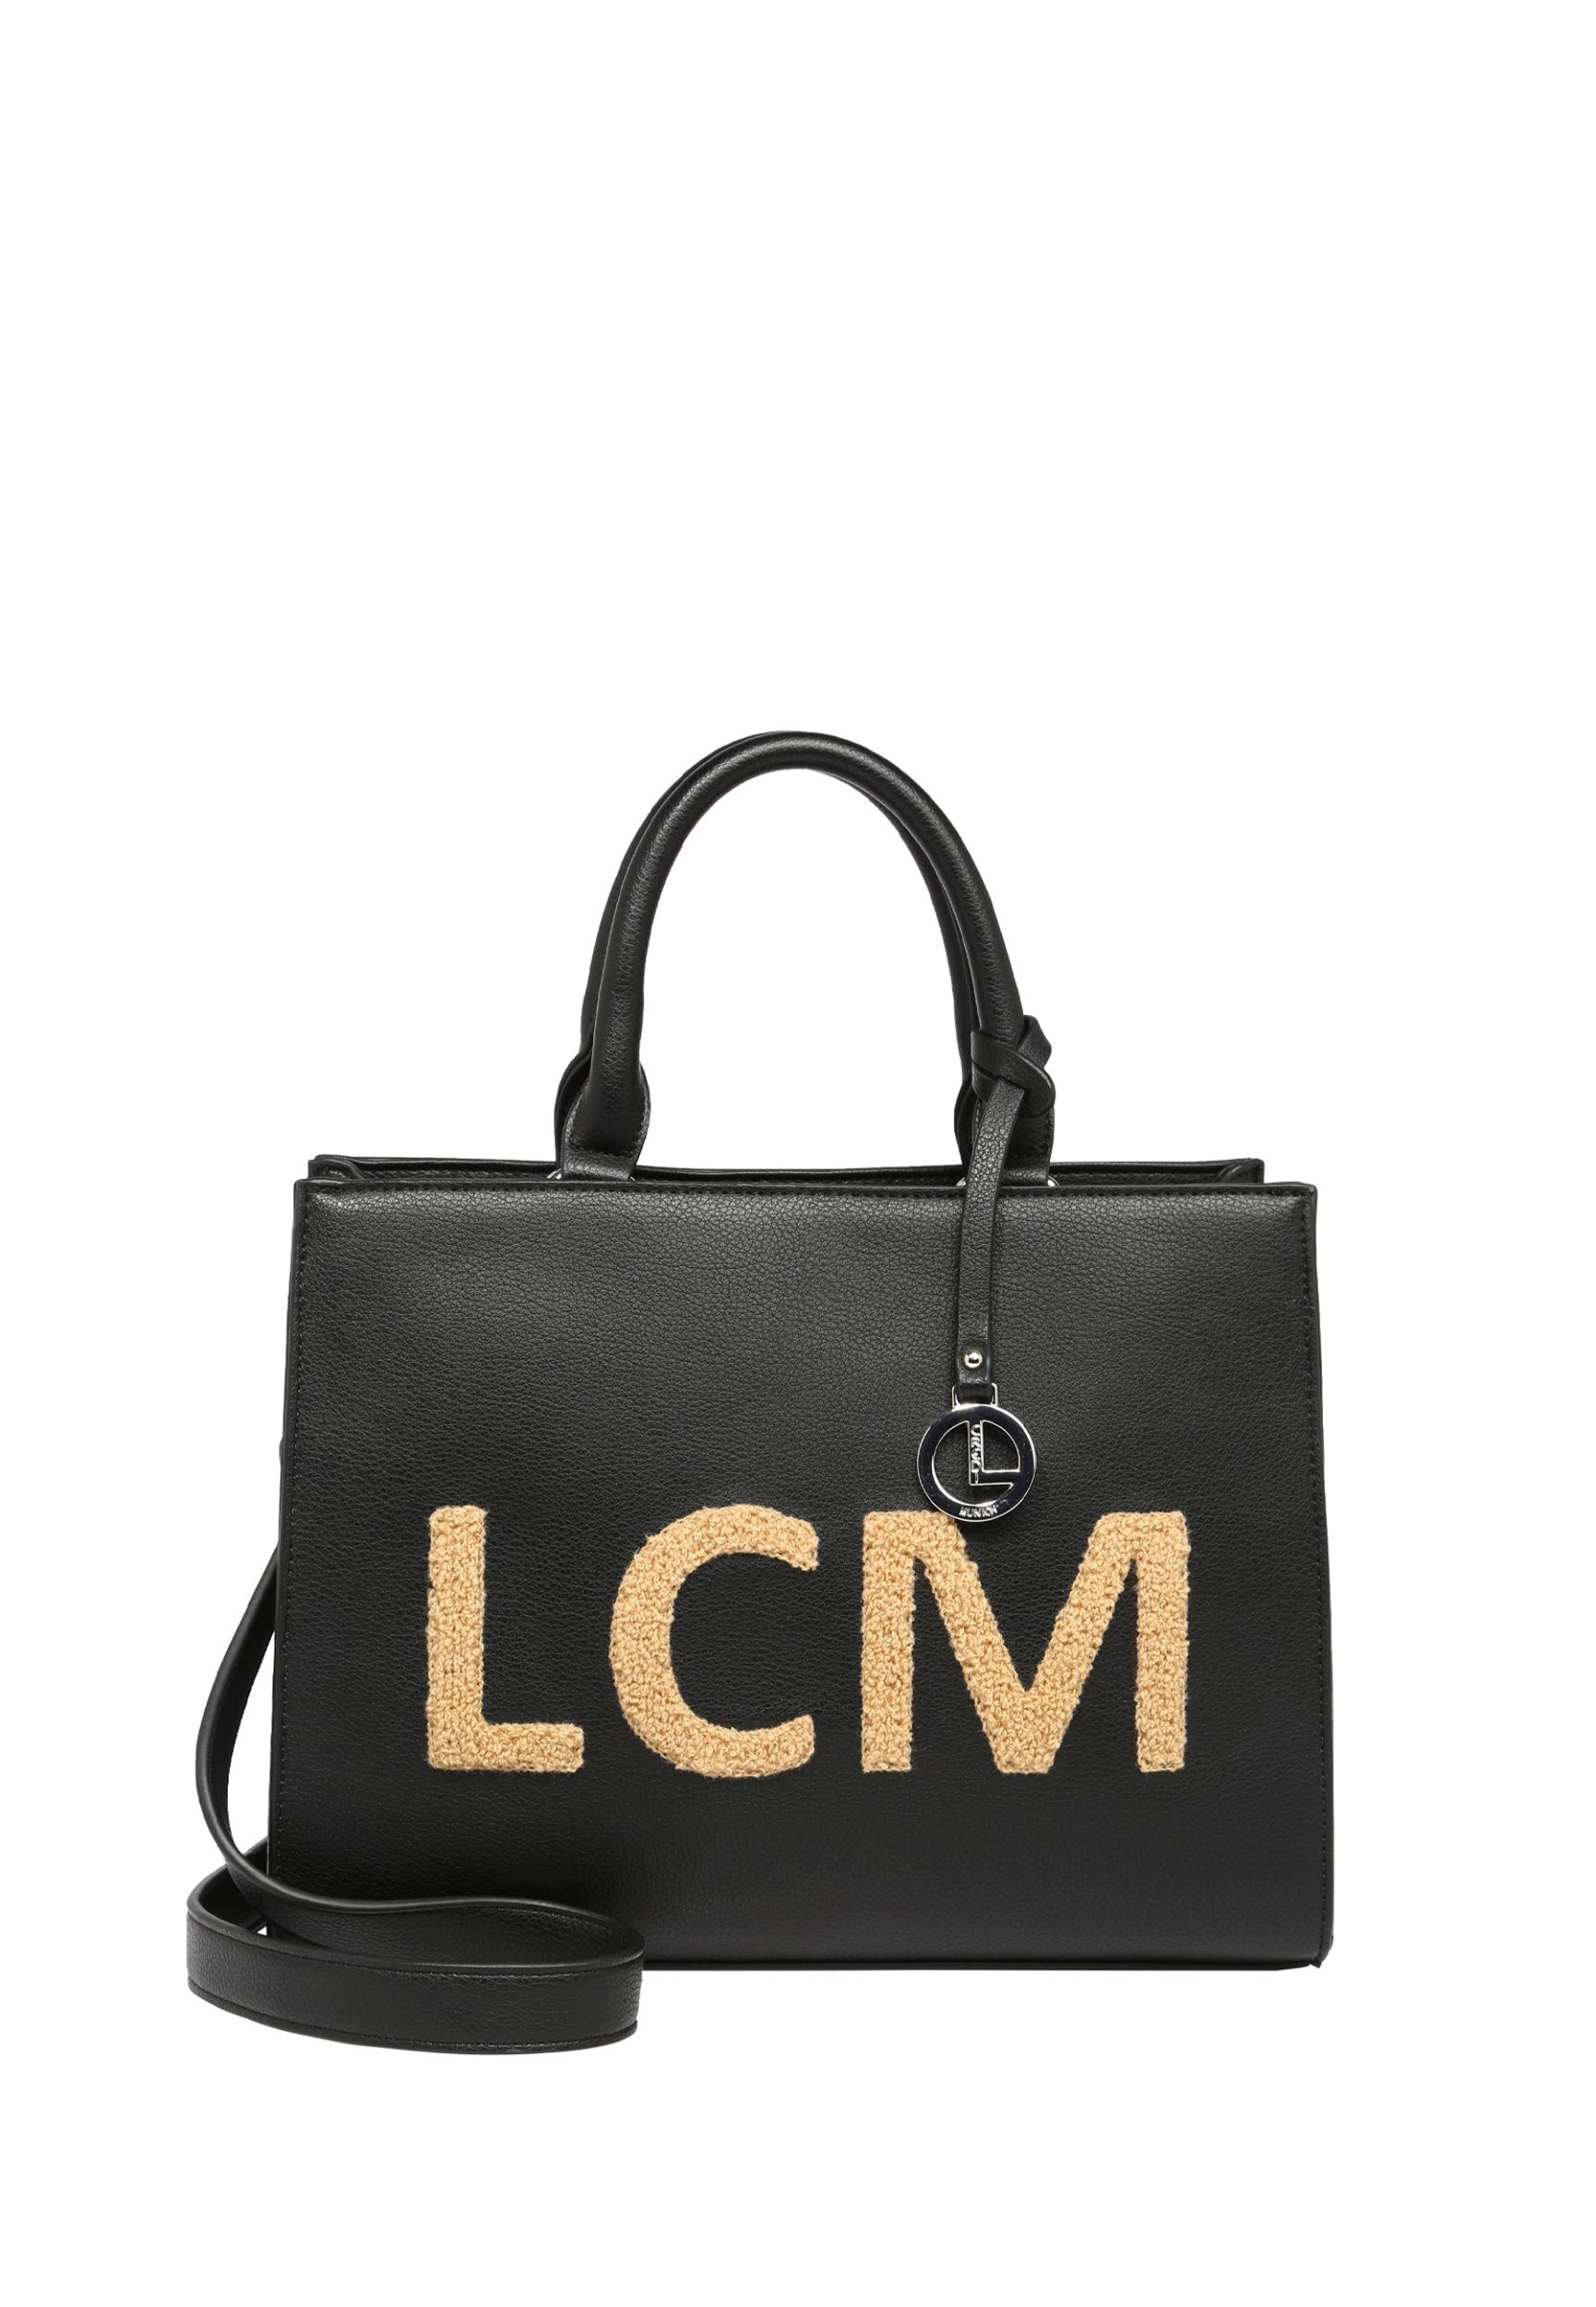 Schwarze L. CREDI Handtaschen online kaufen | OTTO